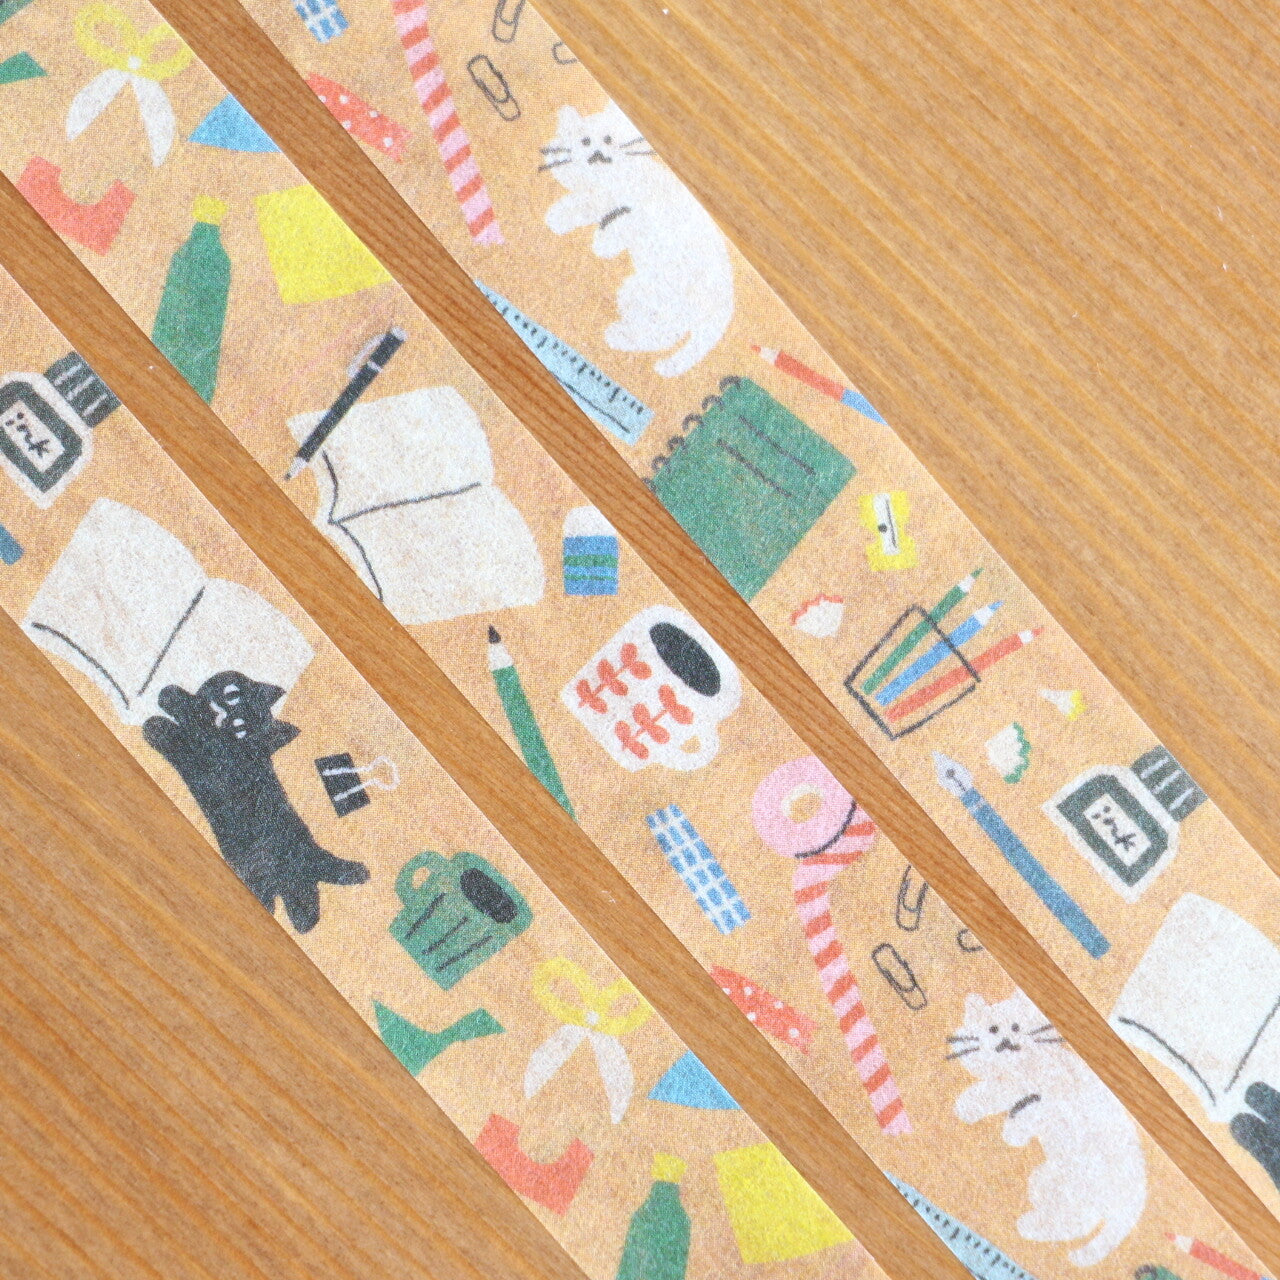 Stationery & Cats / Wa-Life Biyori Washi Tape · Furukawashiko